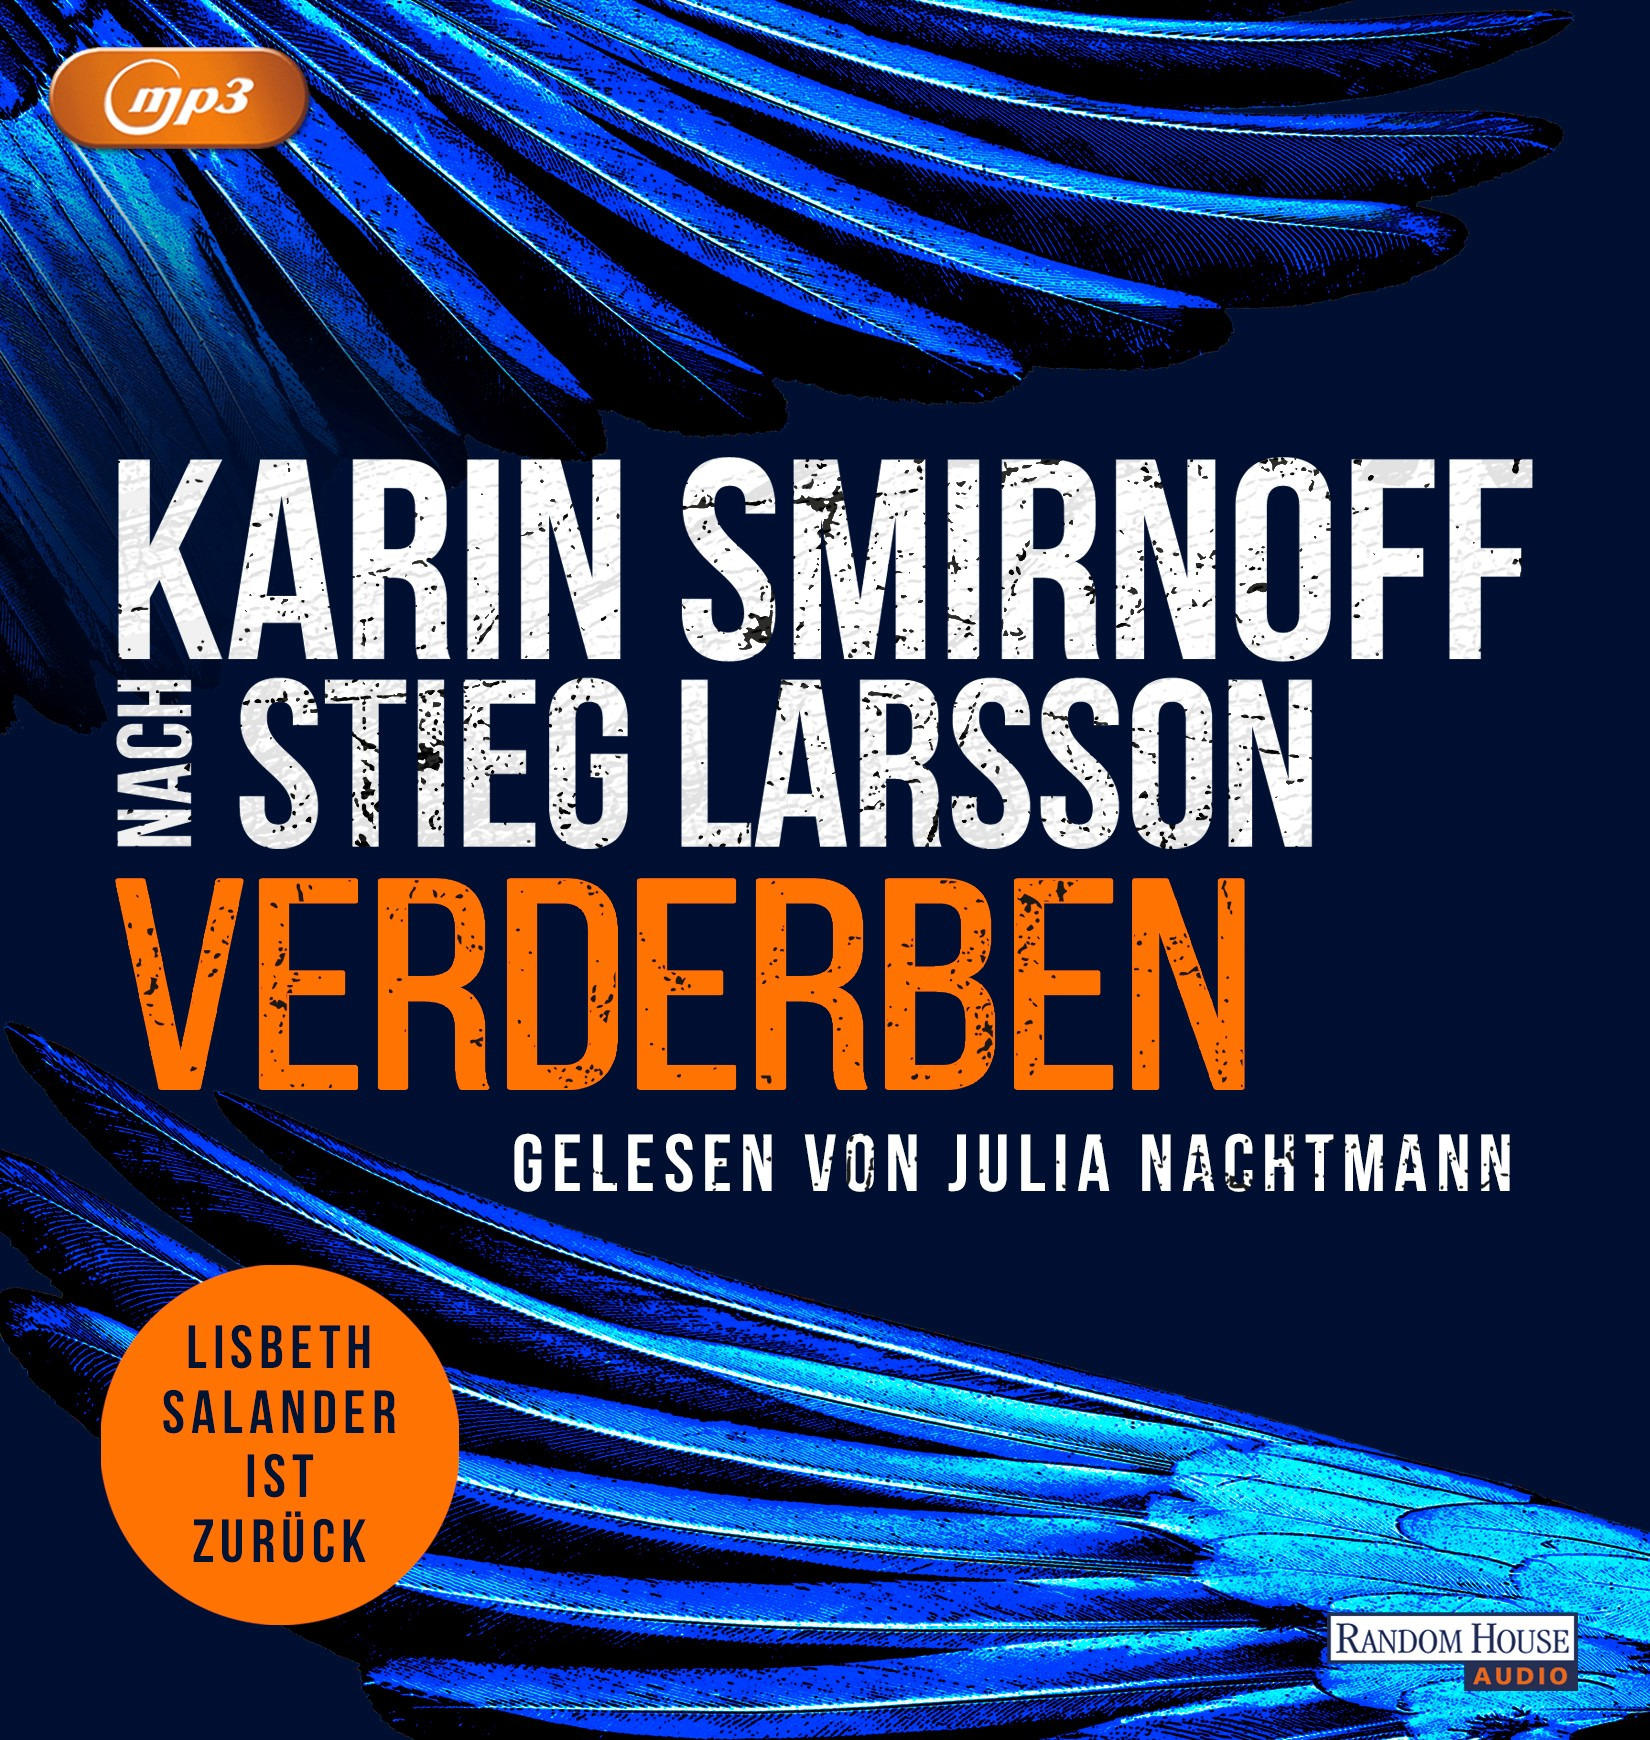 Karin Smirnoff - - (MP3-CD) Verderben